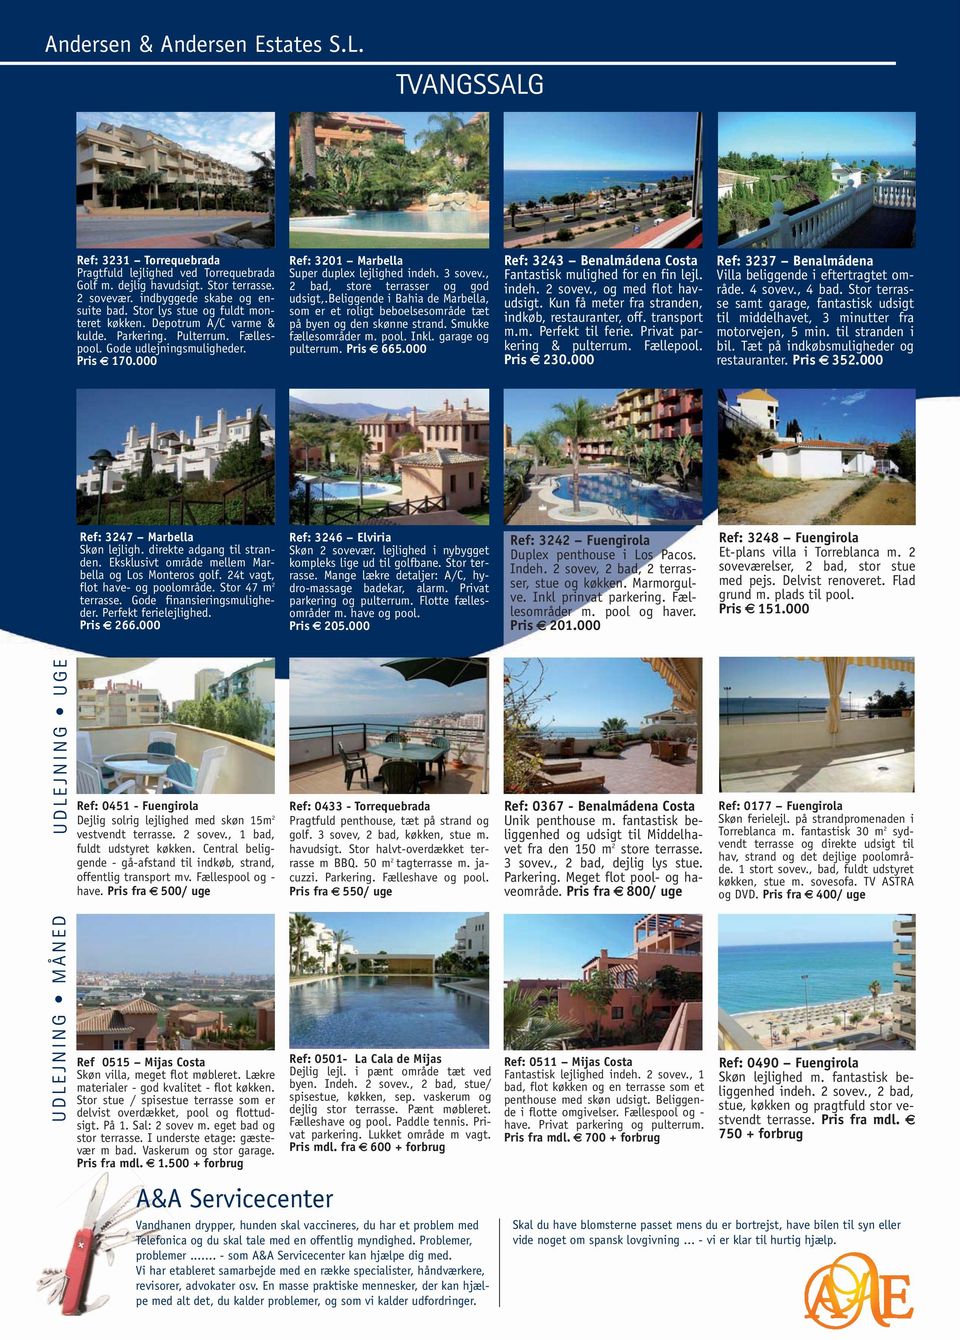 , 2 bad, store terrasser og god udsigt,.beliggende i Bahia de Marbella, som er et roligt beboelsesområde tæt på byen og den skønne strand. Smukke fællesområder m. pool. Inkl. garage og pulterrum.